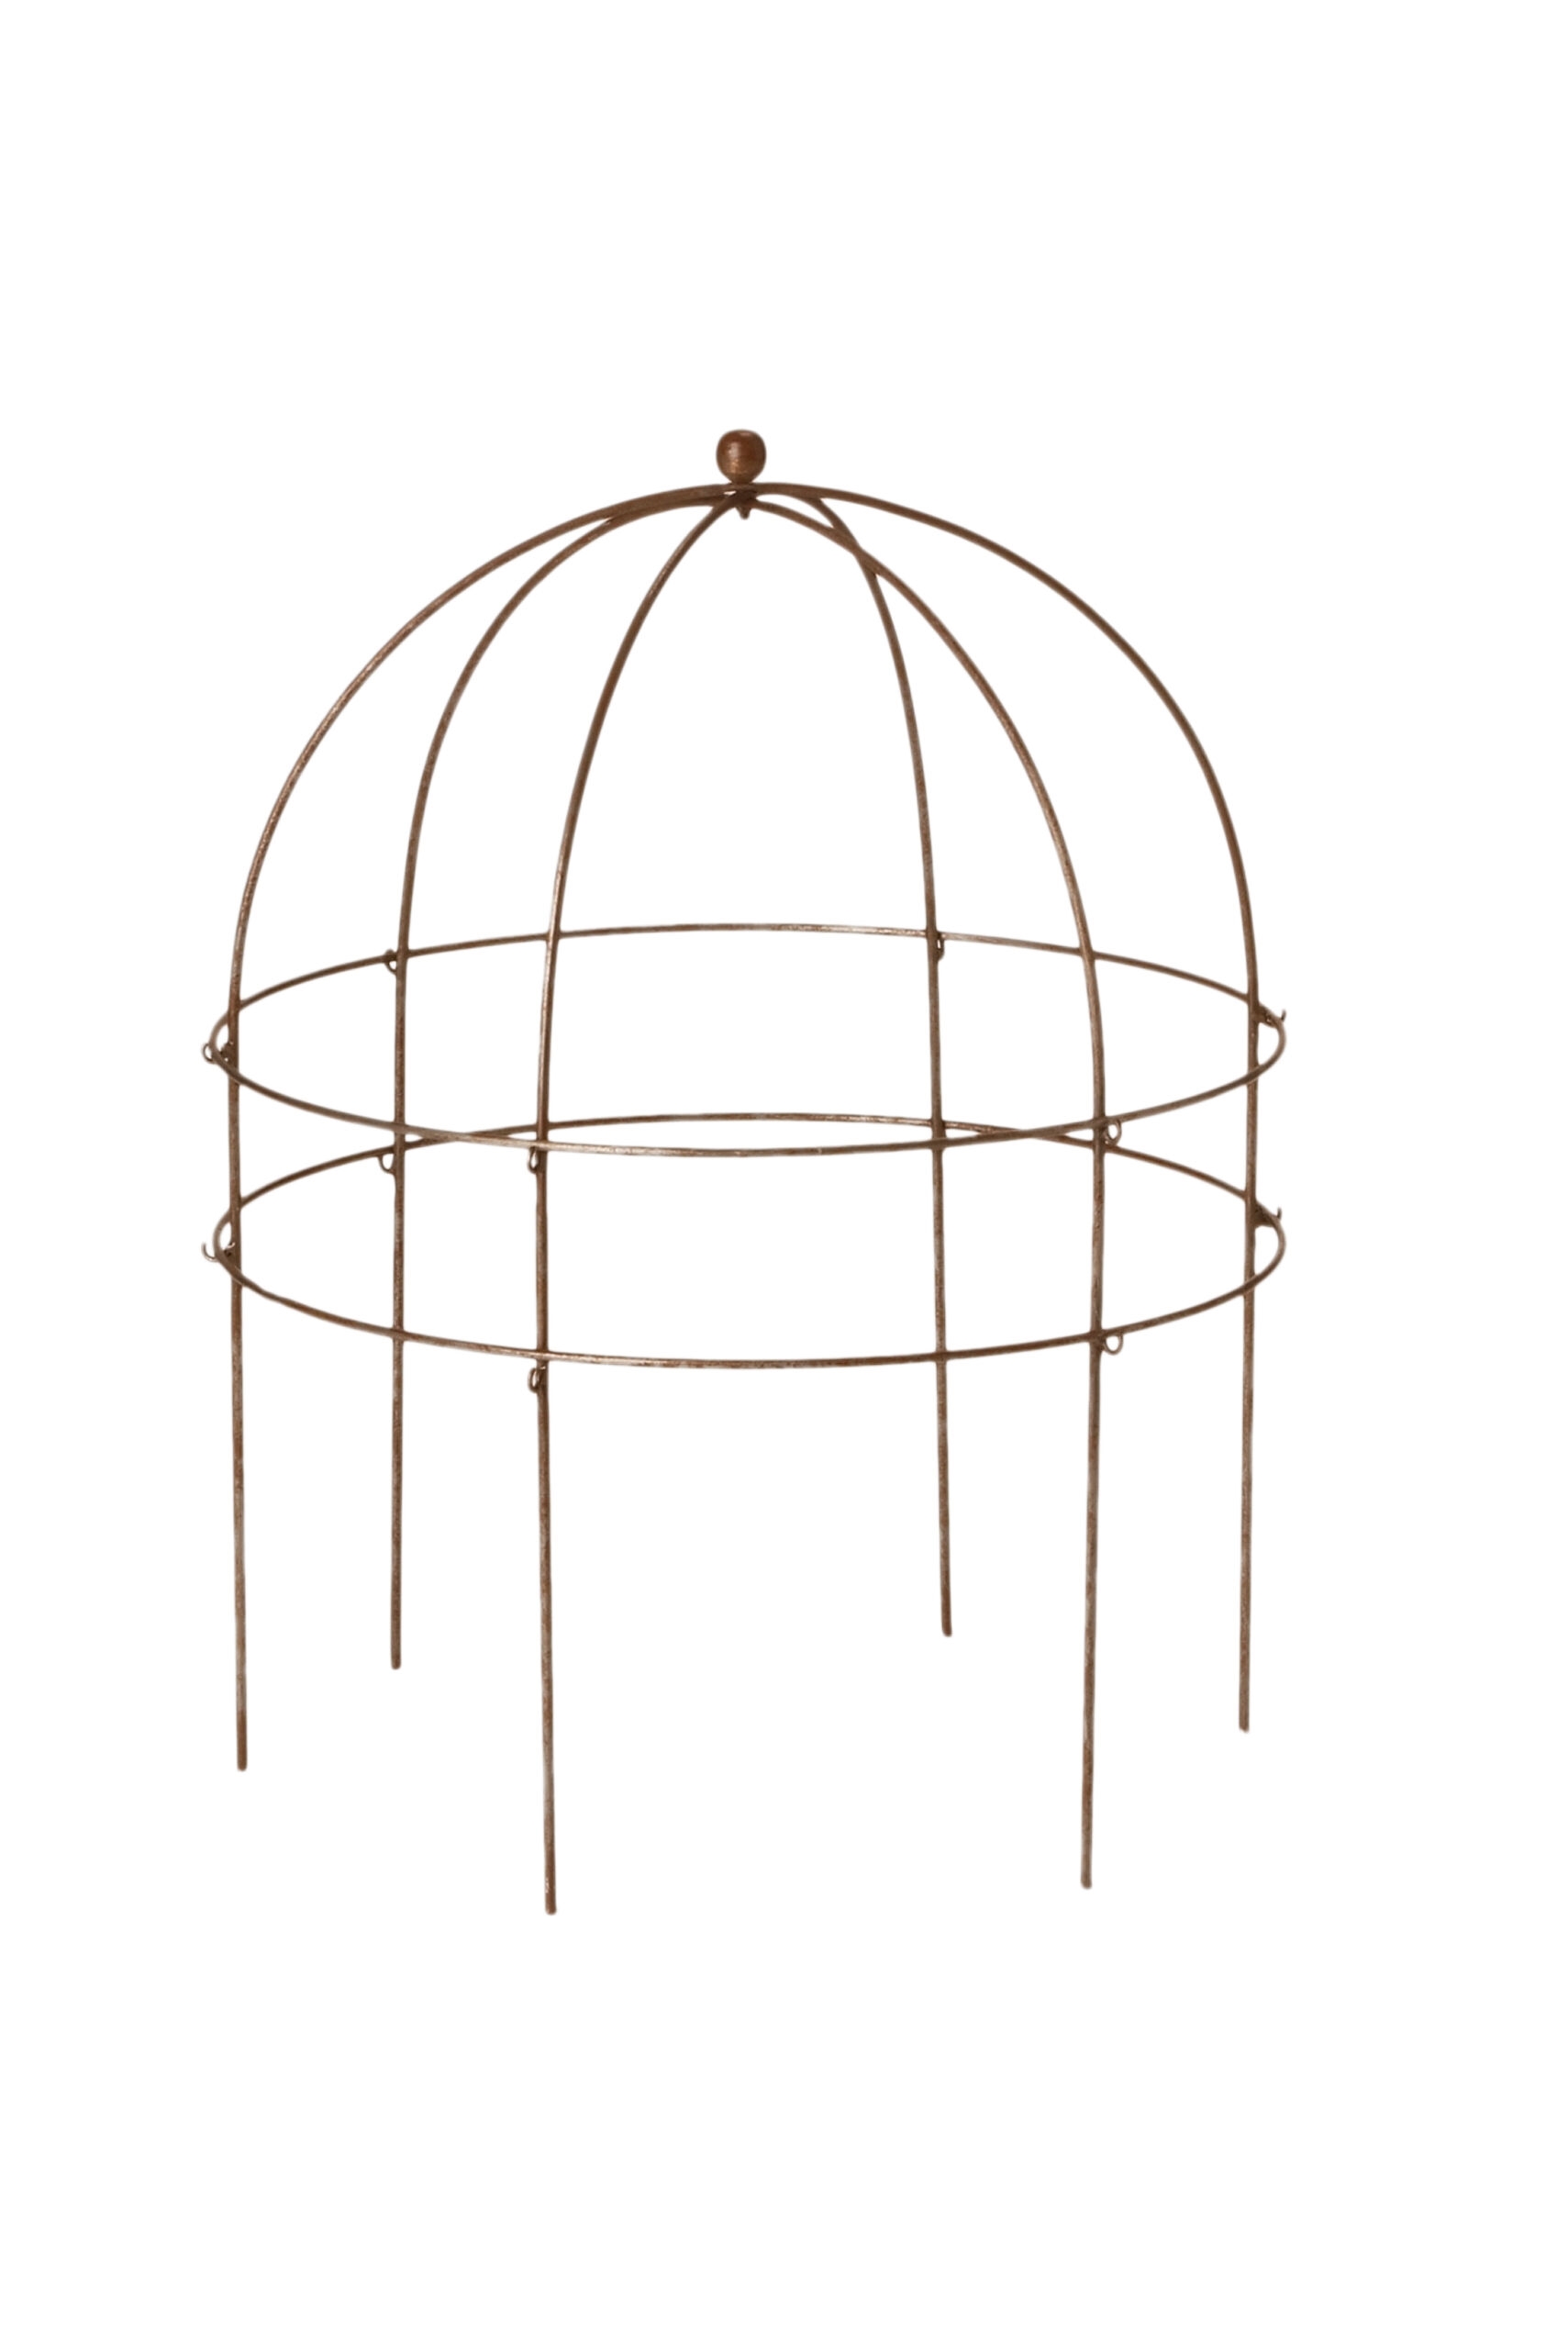 Jardin Bird Cage Support, 26"